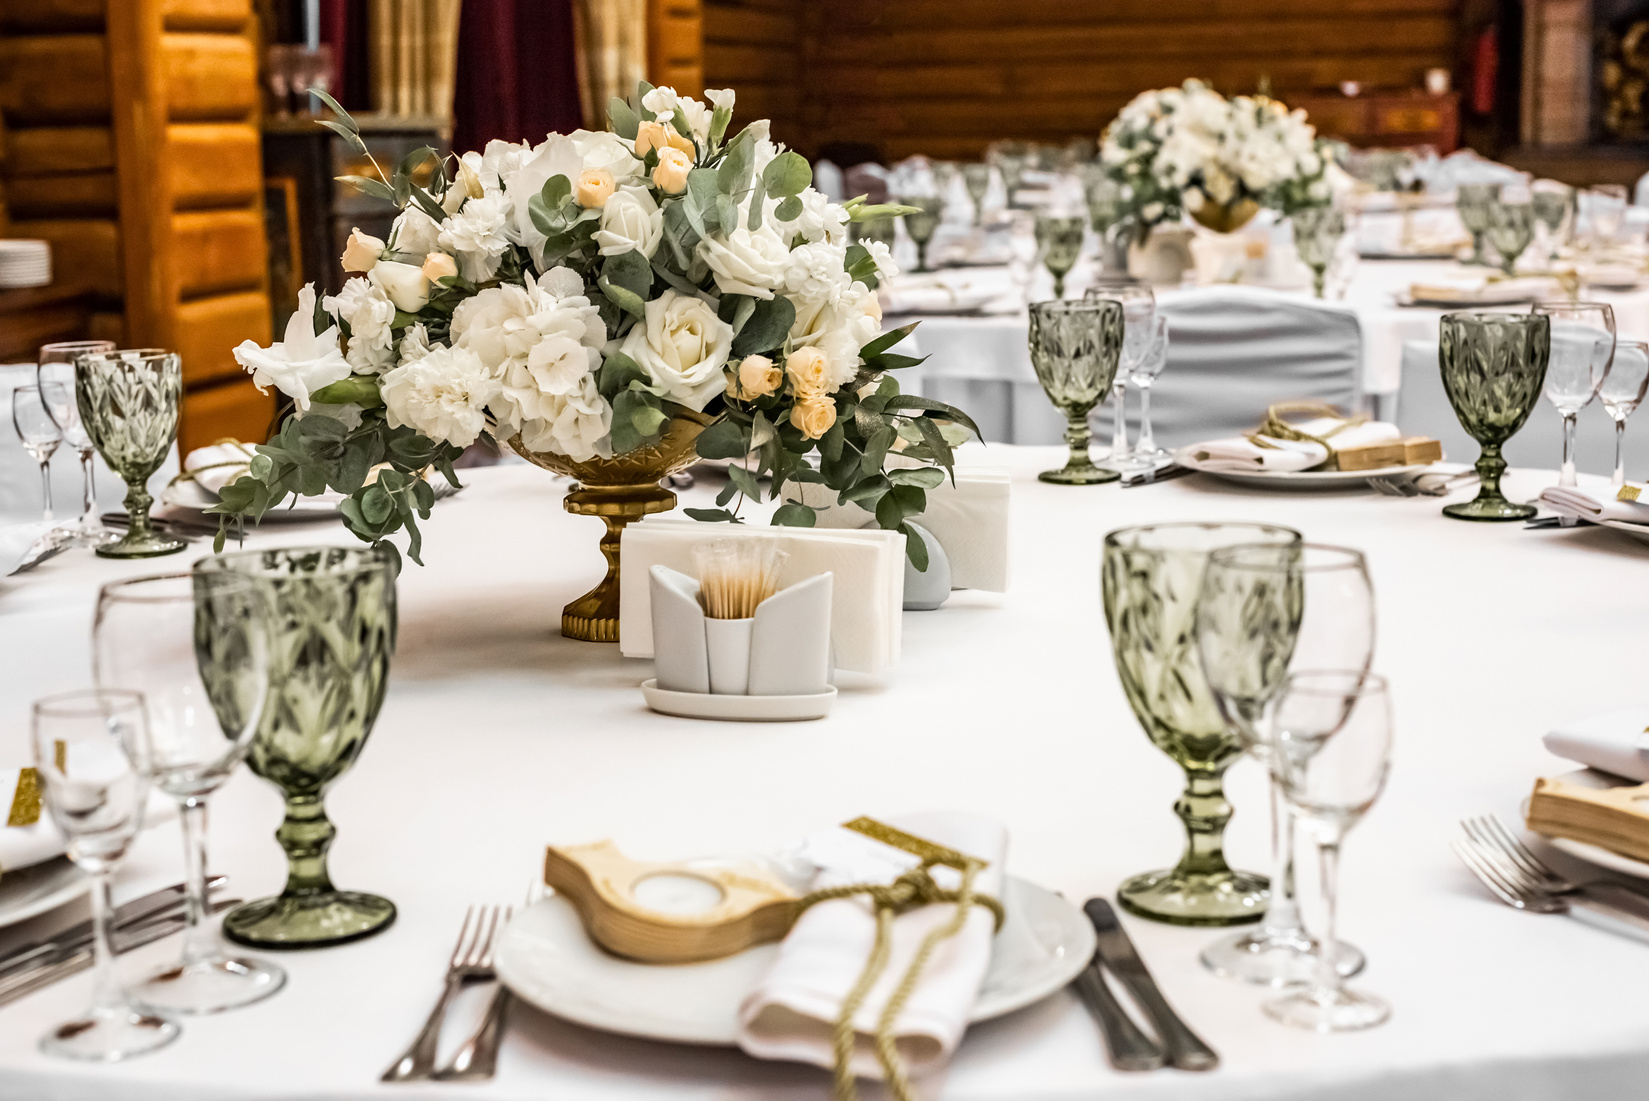 Luxury wedding arrangement. Wedding banquet decoration.